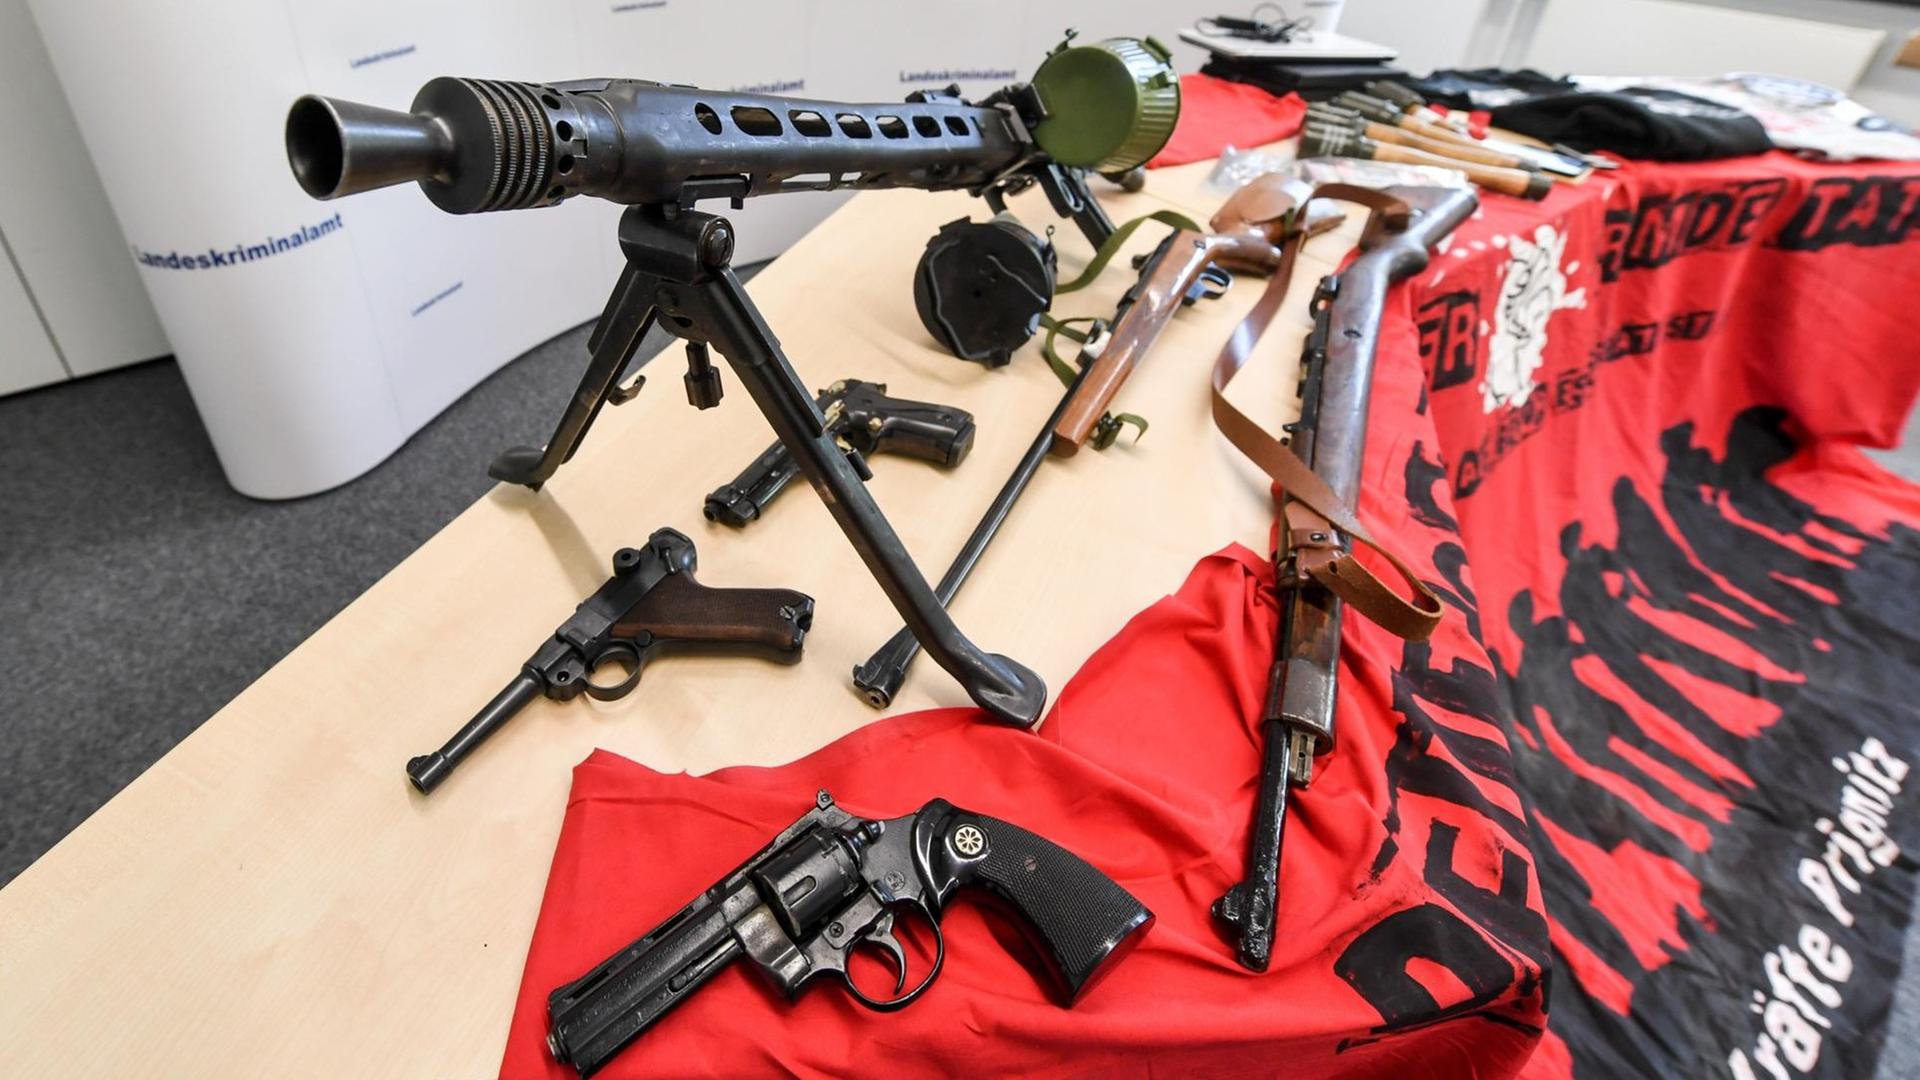 Sichergestellte Waffen und Materialien bem Landeskriminalamt Brandenburg auf einem Tisch nach einer Razzia gegen die Neonazi-Gruppe "Freie Kräfte Prignitz".